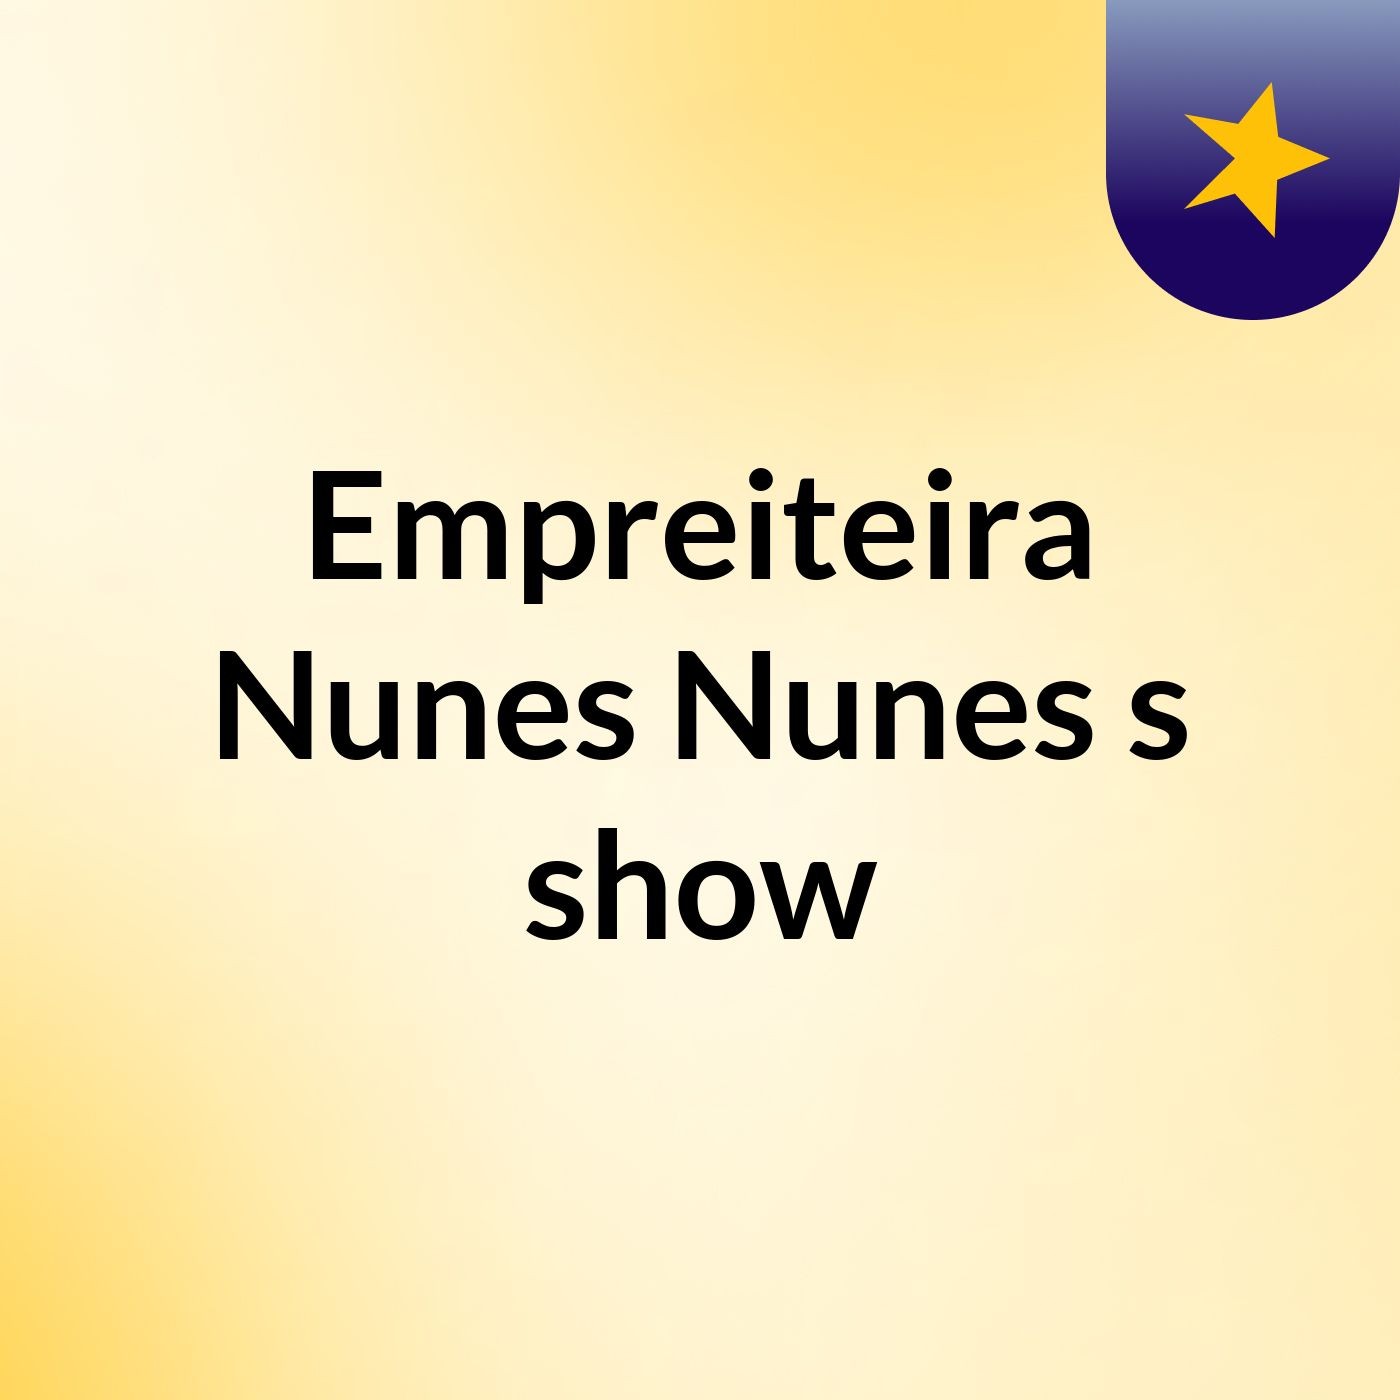 Empreiteira Nunes Nunes's show